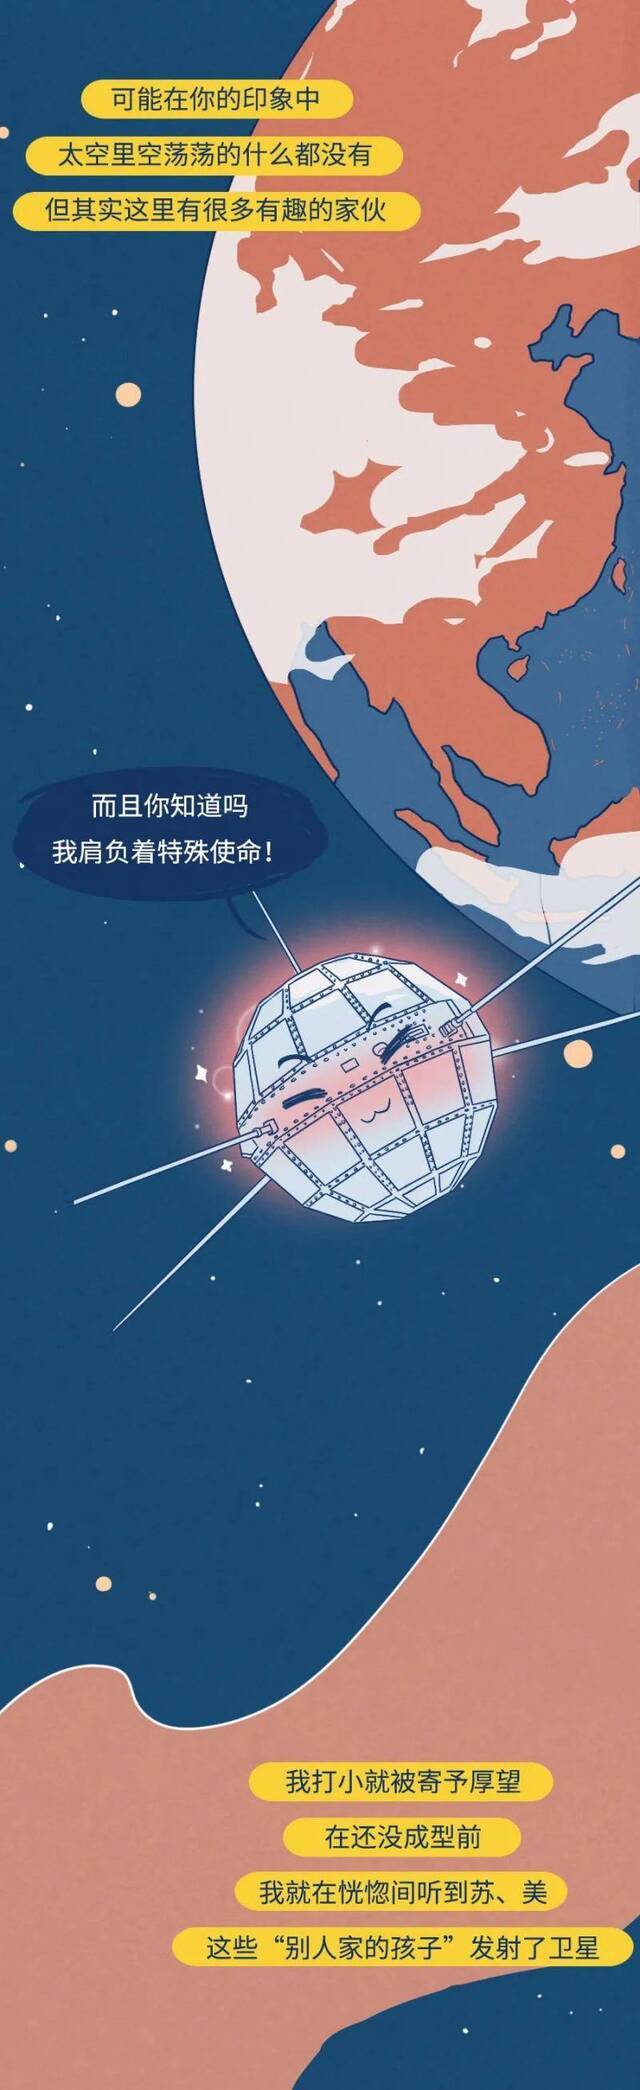 中国航天日 东方红漫游50年